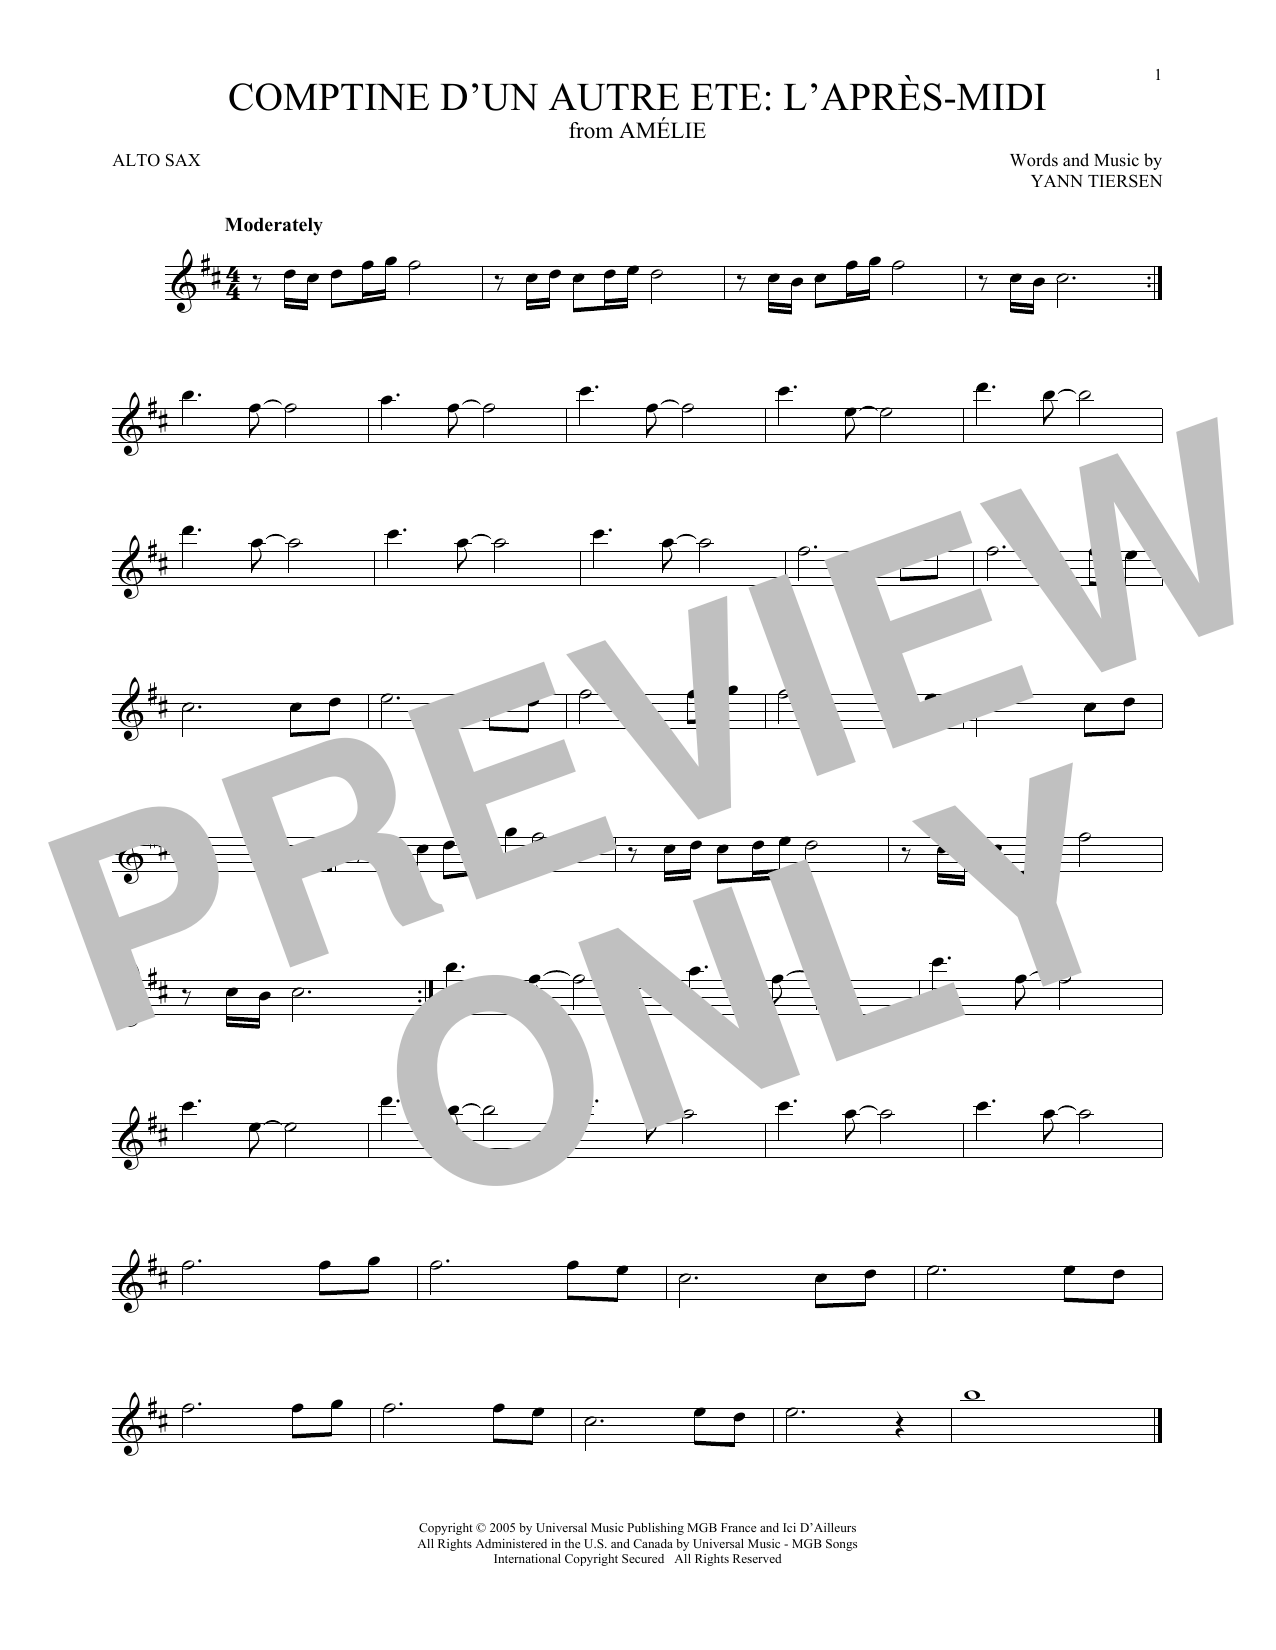 Yann Tiersen Comptine d'un autre été: L'après-midi (from Amelie) Sheet Music Notes & Chords for Cello Solo - Download or Print PDF